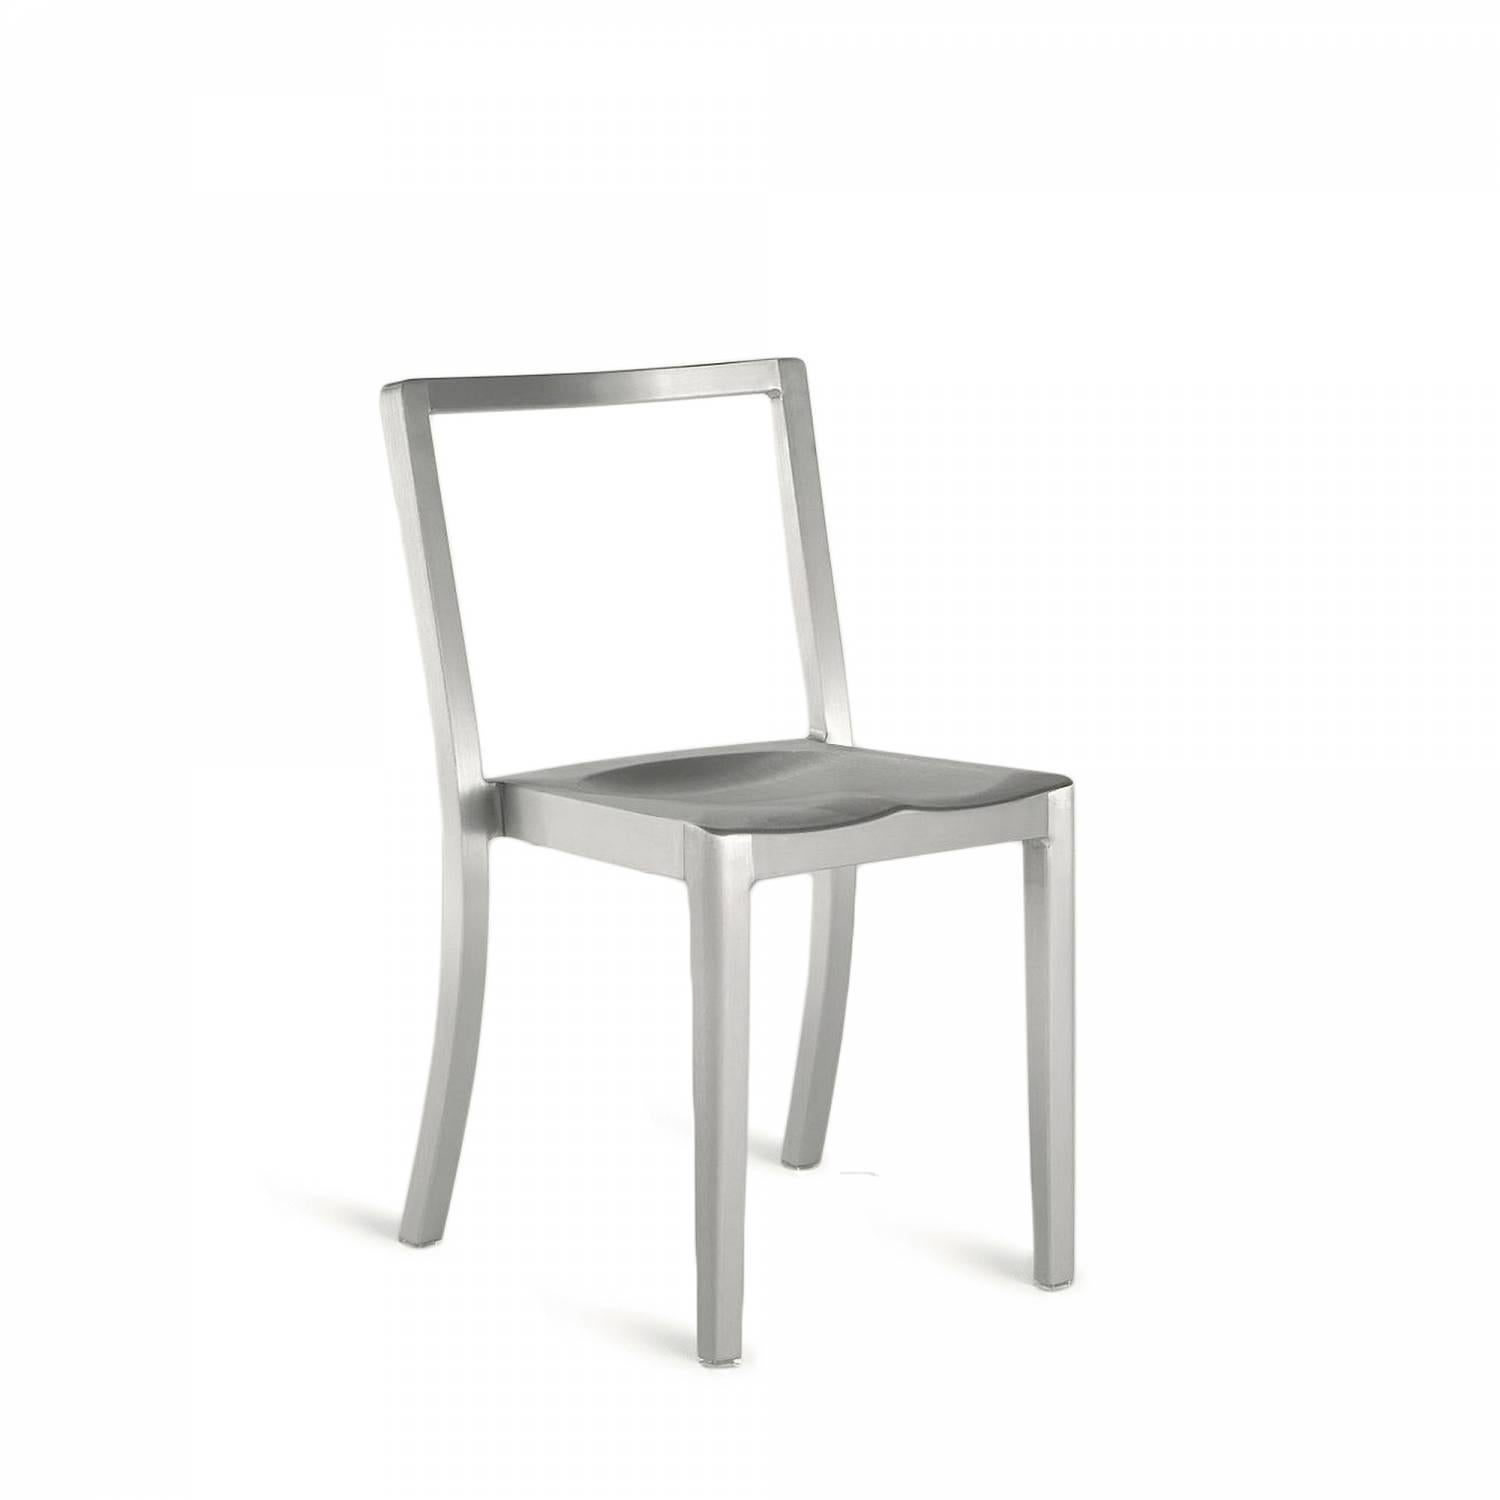 Icon est une chaise empilable cousine de la célèbre chaise Hudson conçue par Starck. Il a été utilisé dans des hôtels, des bars et des restaurants du monde entier, ainsi que dans des centres de formation, des salles de réunion et des écoles. Starck